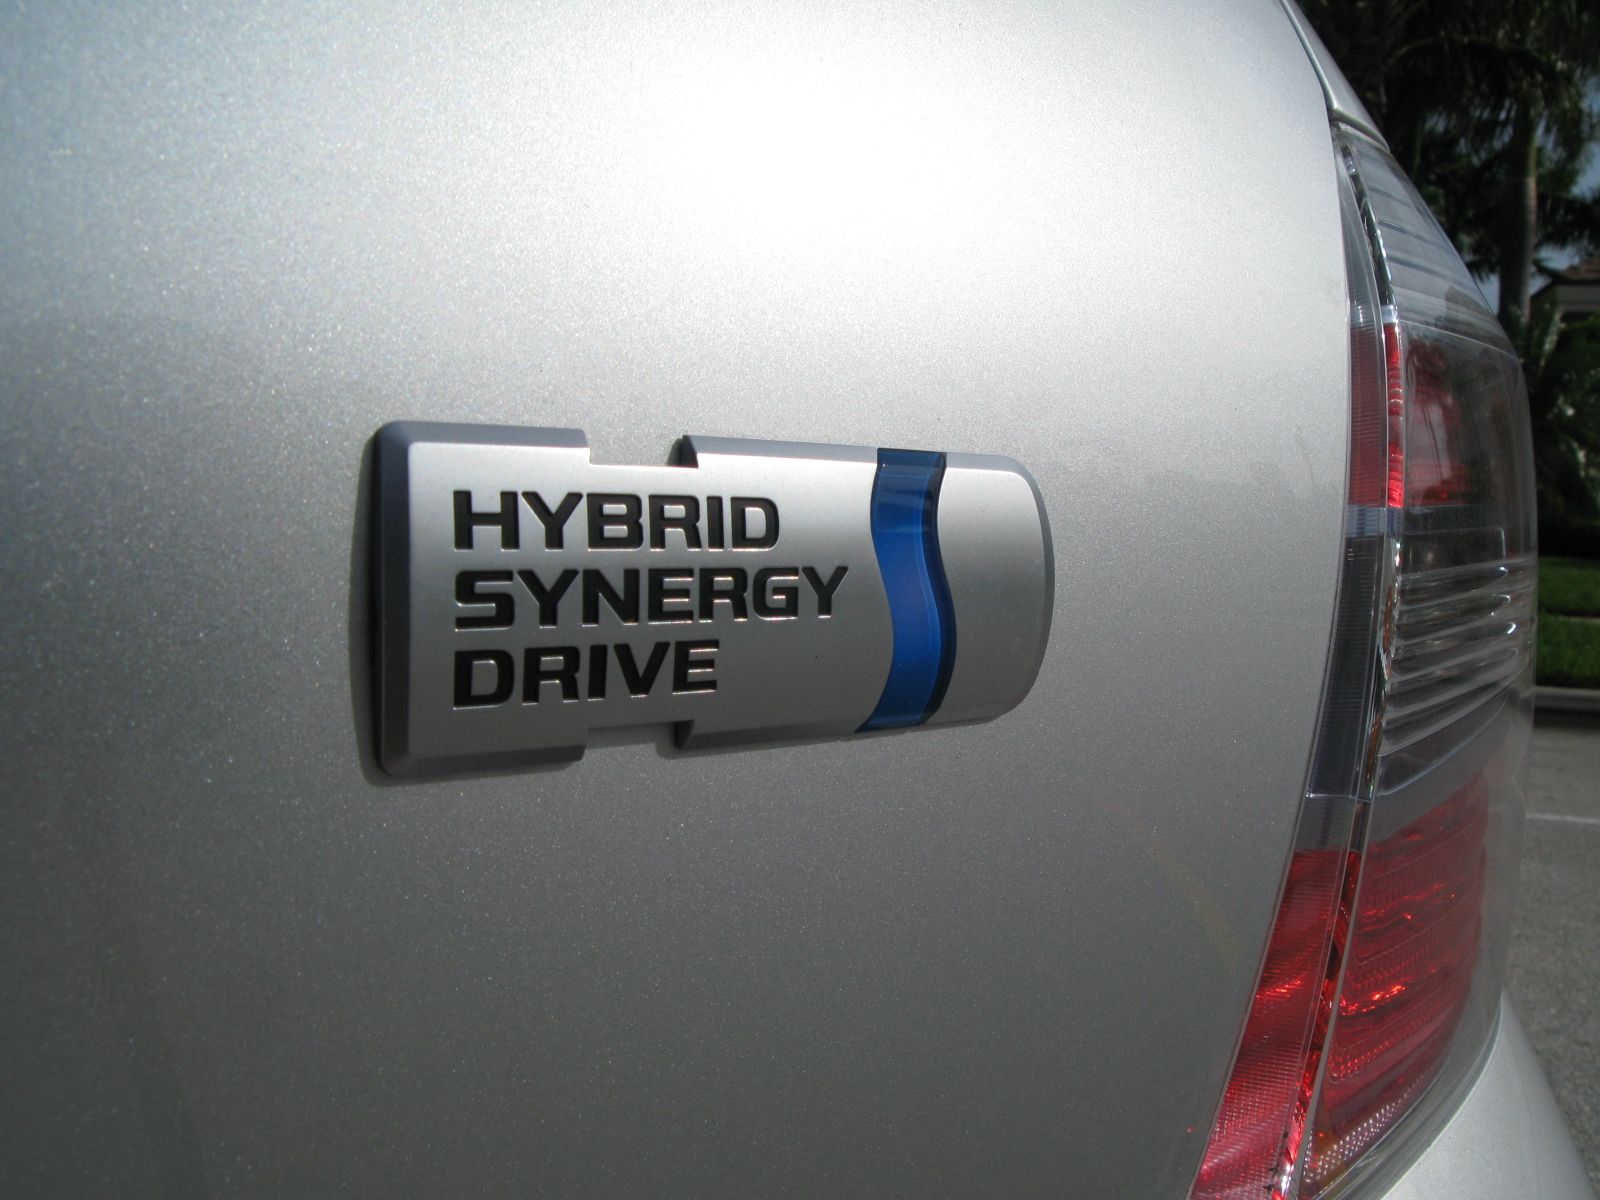 2008 Toyota Highlander Hybrid